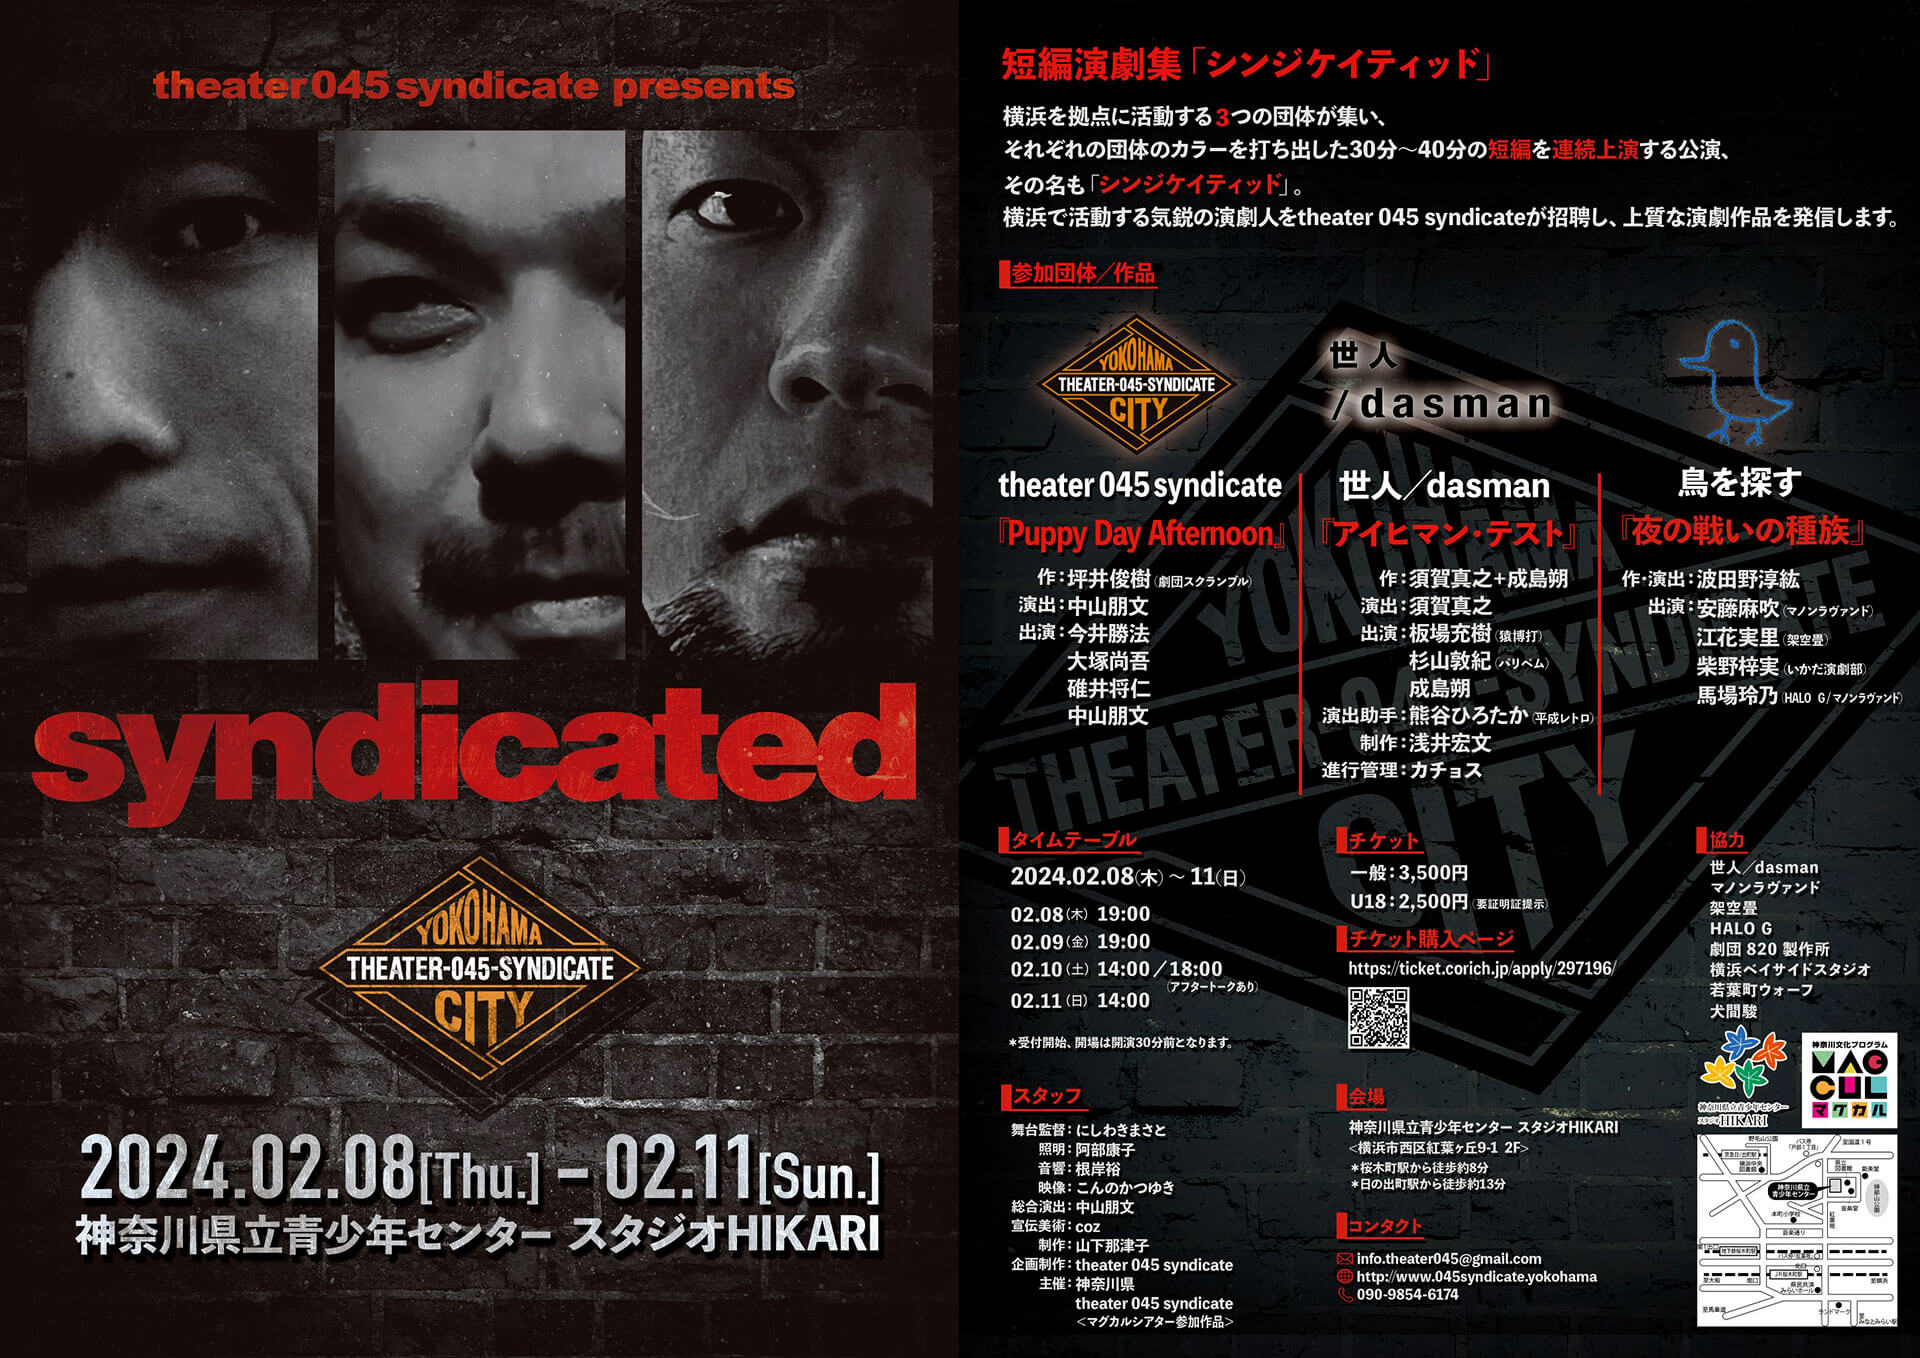 映像制作｜2024年2月上演｜theater 045 syndicate presents 『syndicated』